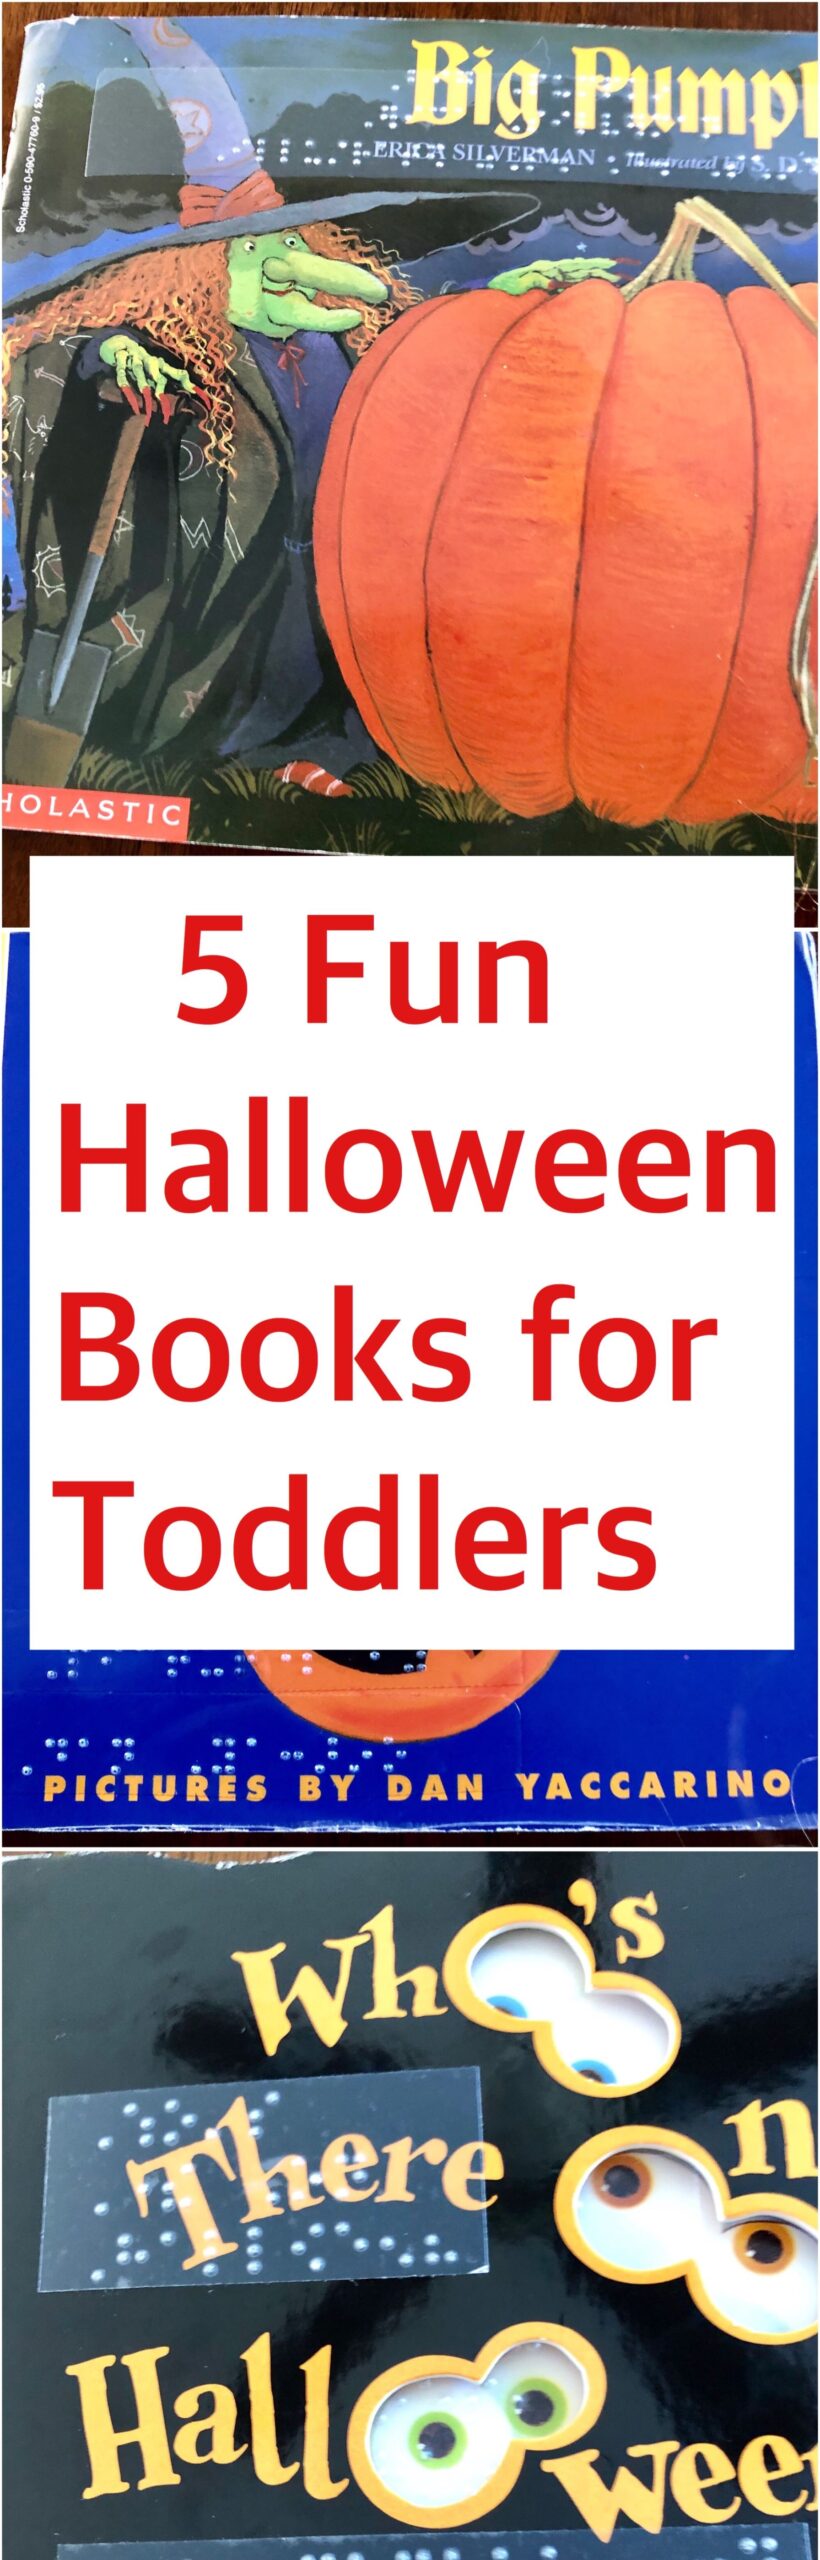 5 fun Halloween books pin